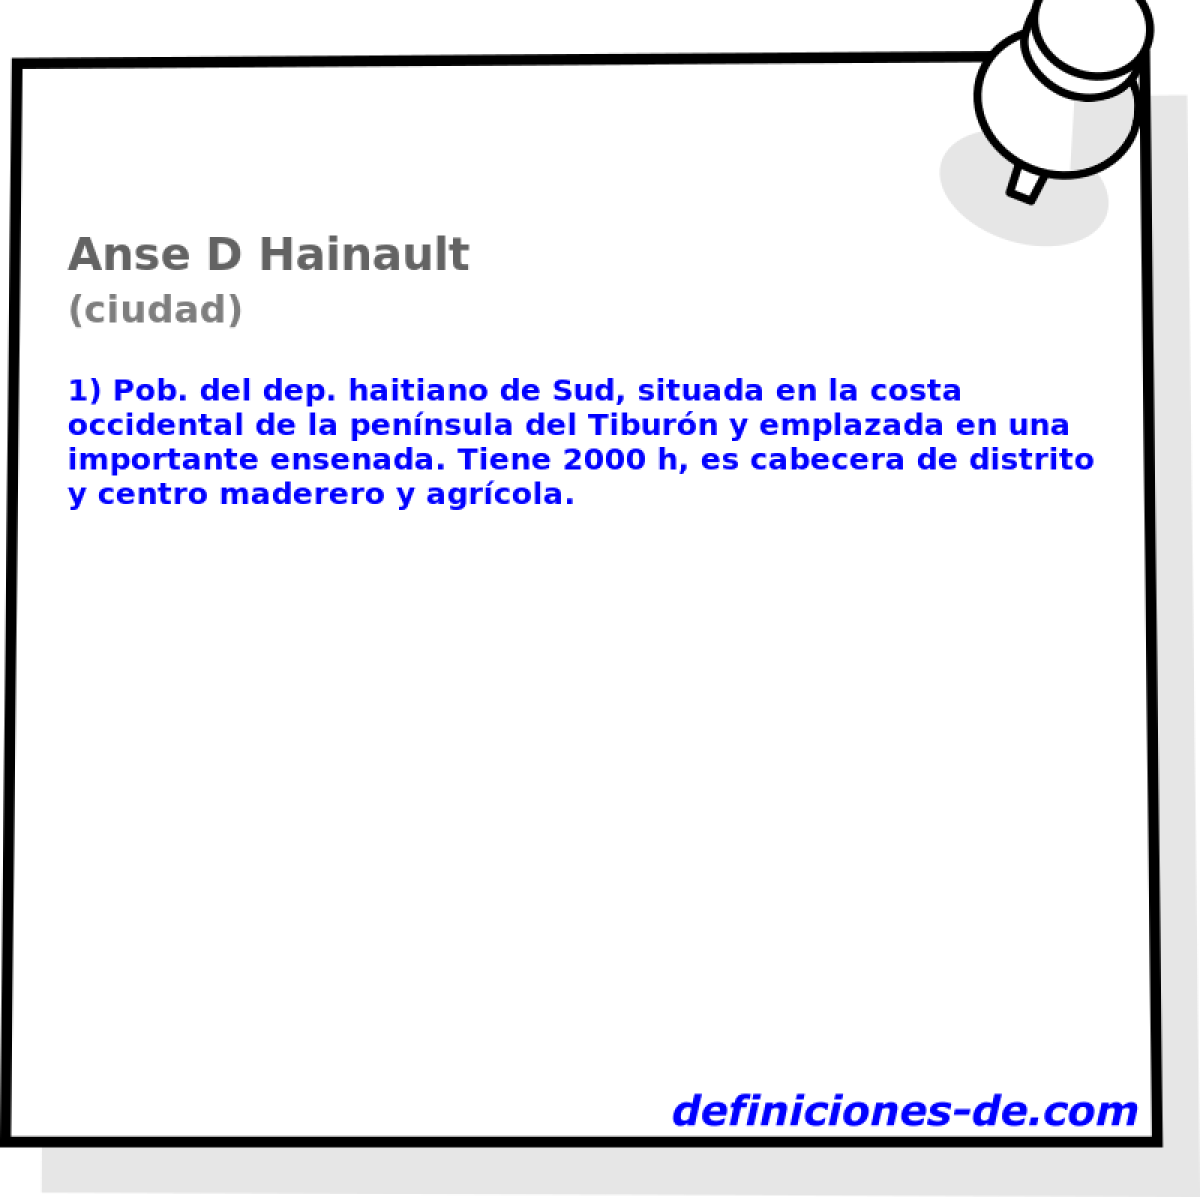 Anse D Hainault (ciudad)